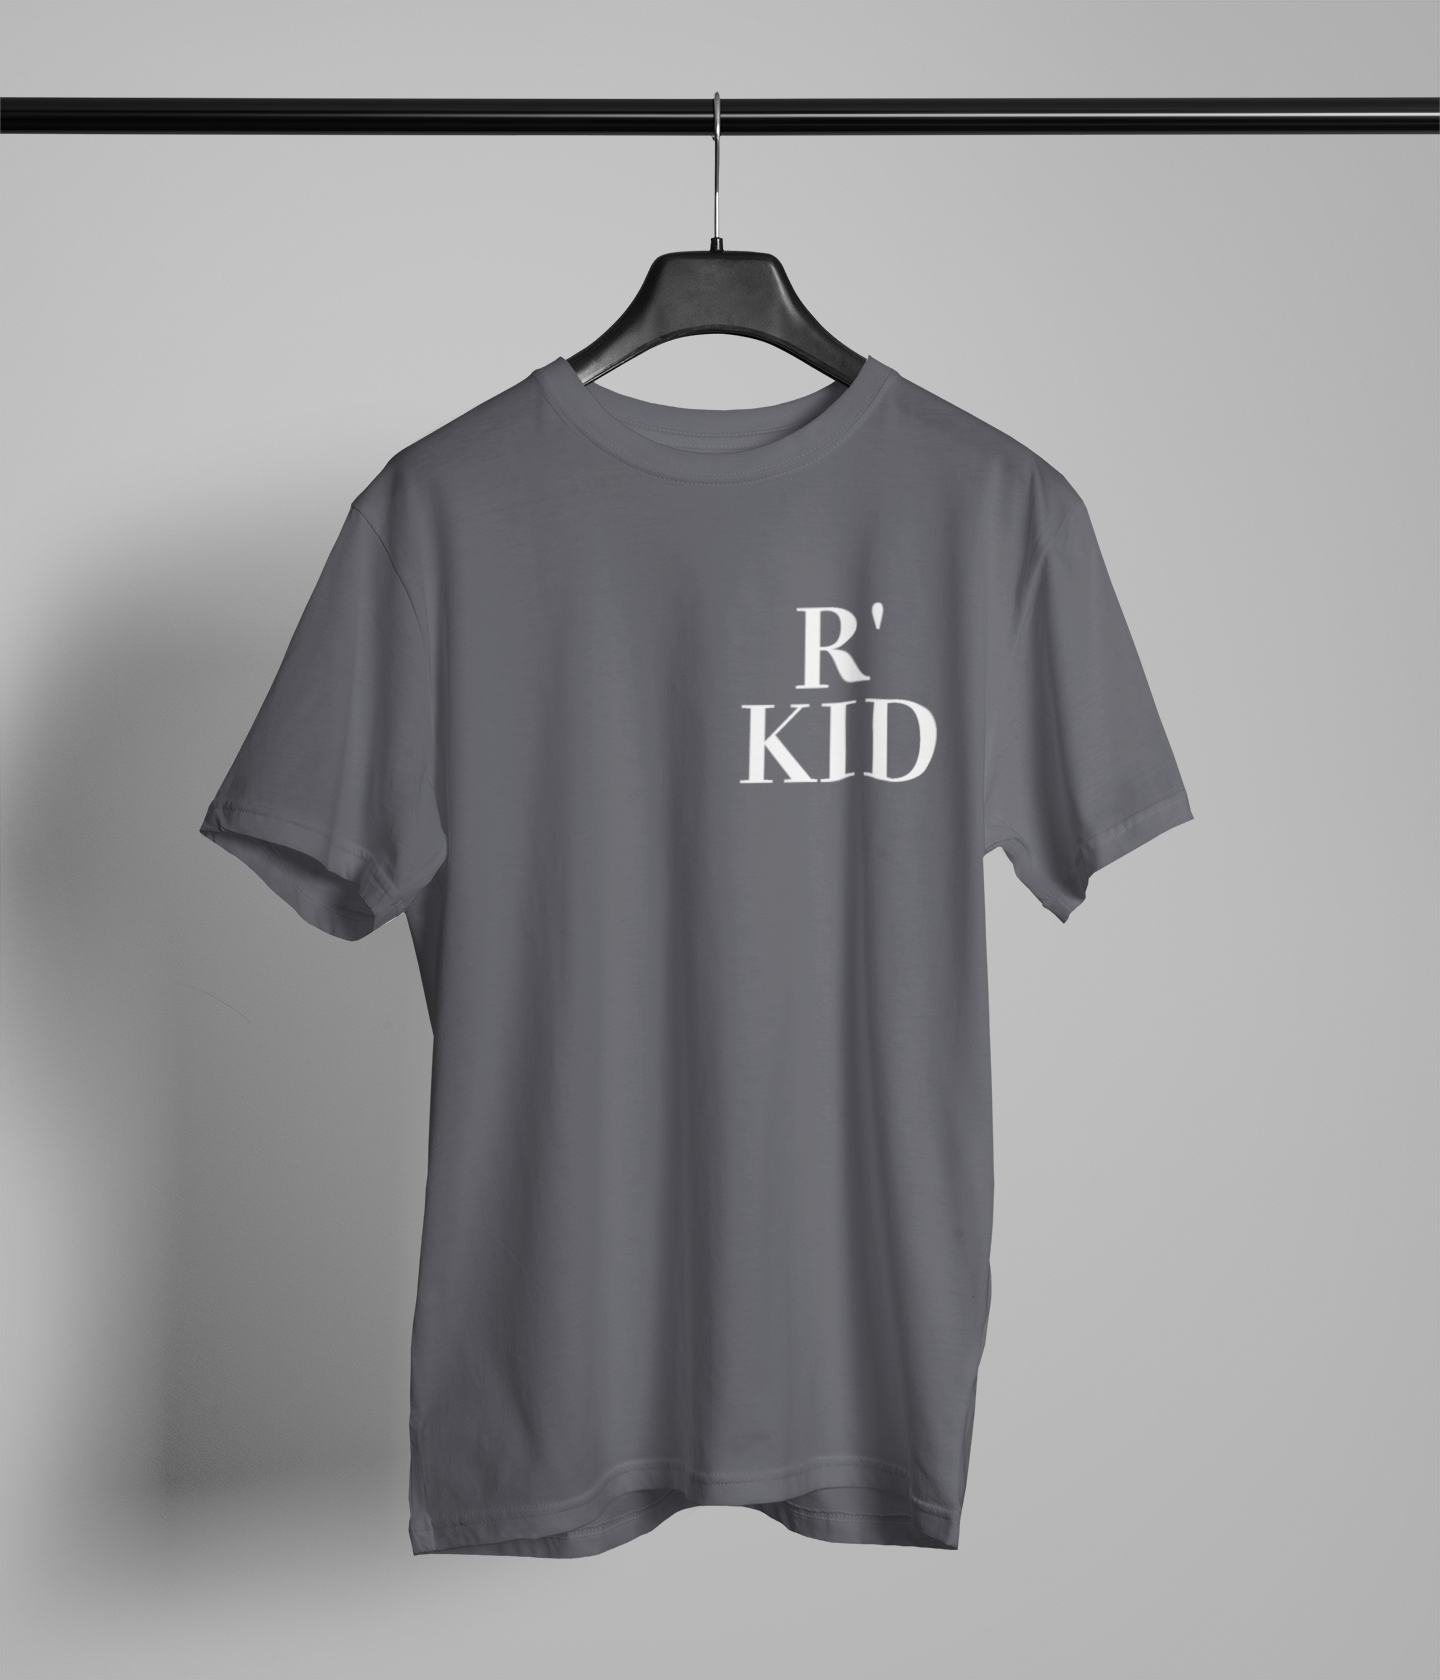 R'KID Northern Slang Small Logo T-Shirt